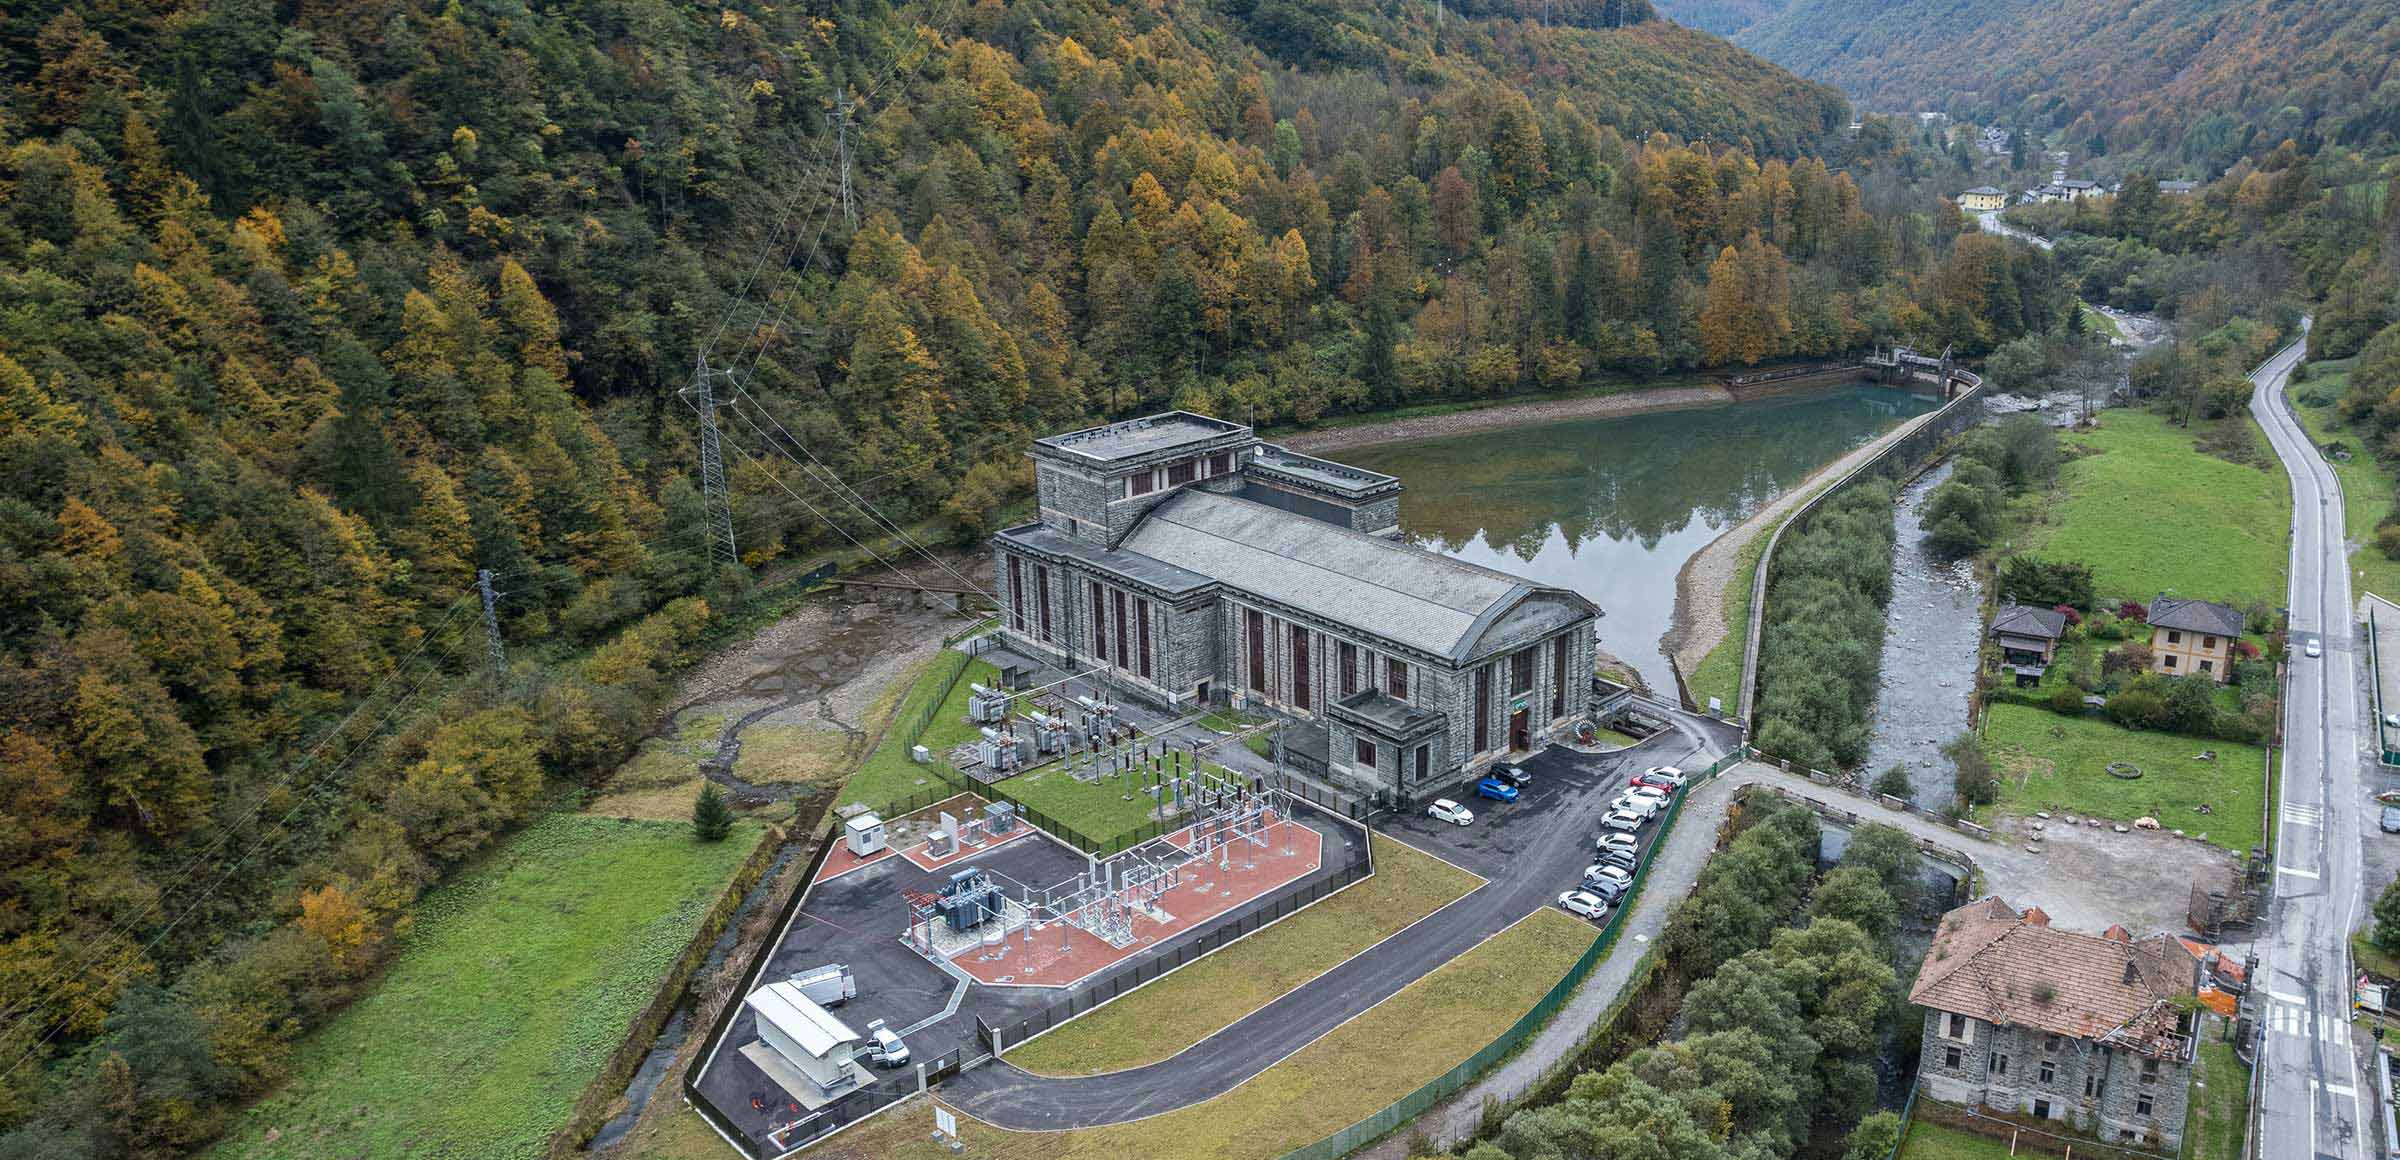 Central hidroeléctrica vista desde arriba